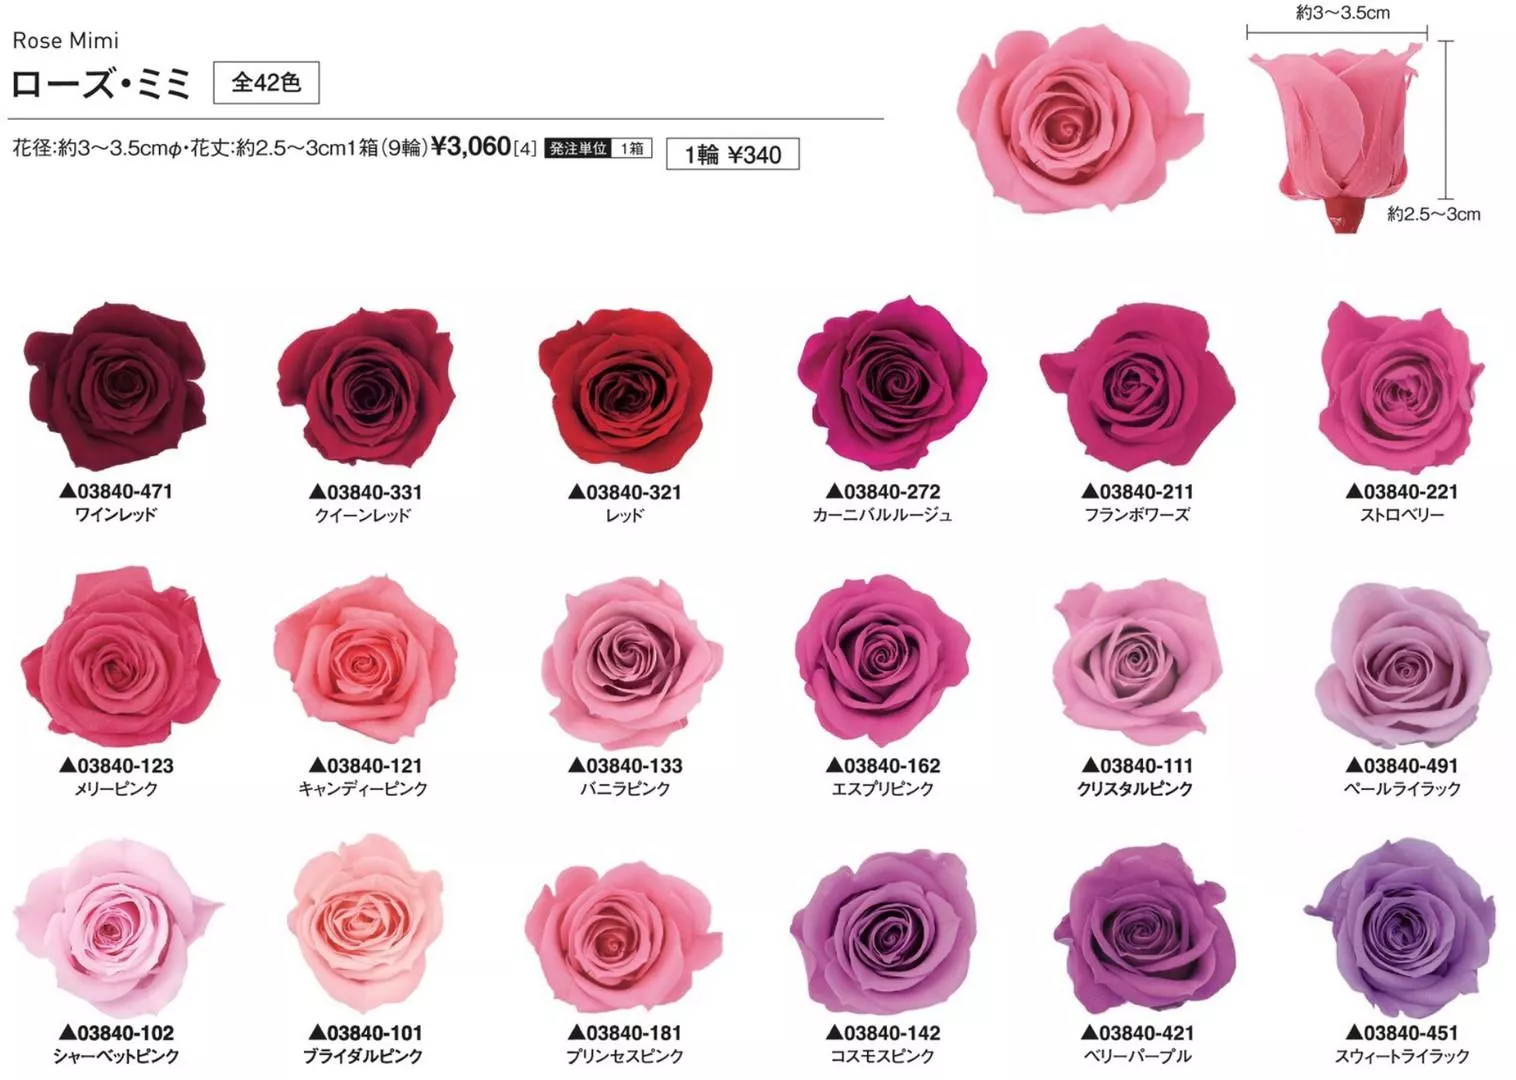 Rose Mini 1盒 8入 Plus In Flower